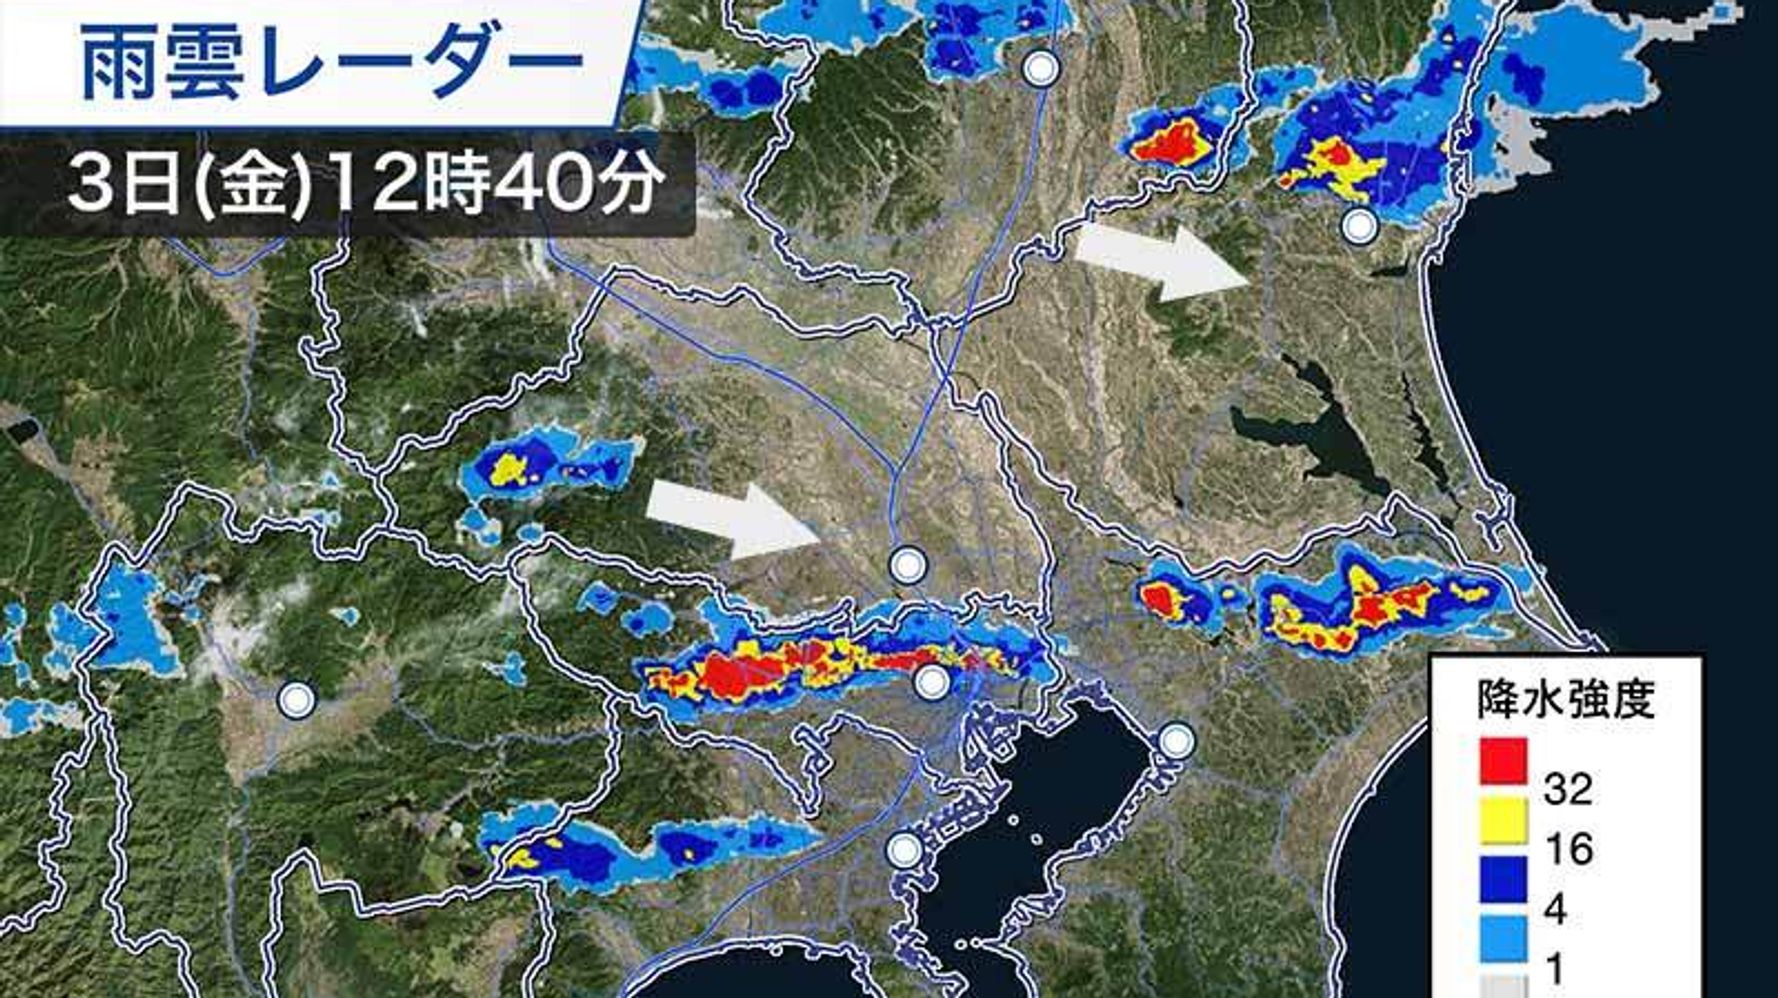 東京など夕方にかけて不安定な天気に 局地的に土砂降りの雨 ハフポスト News